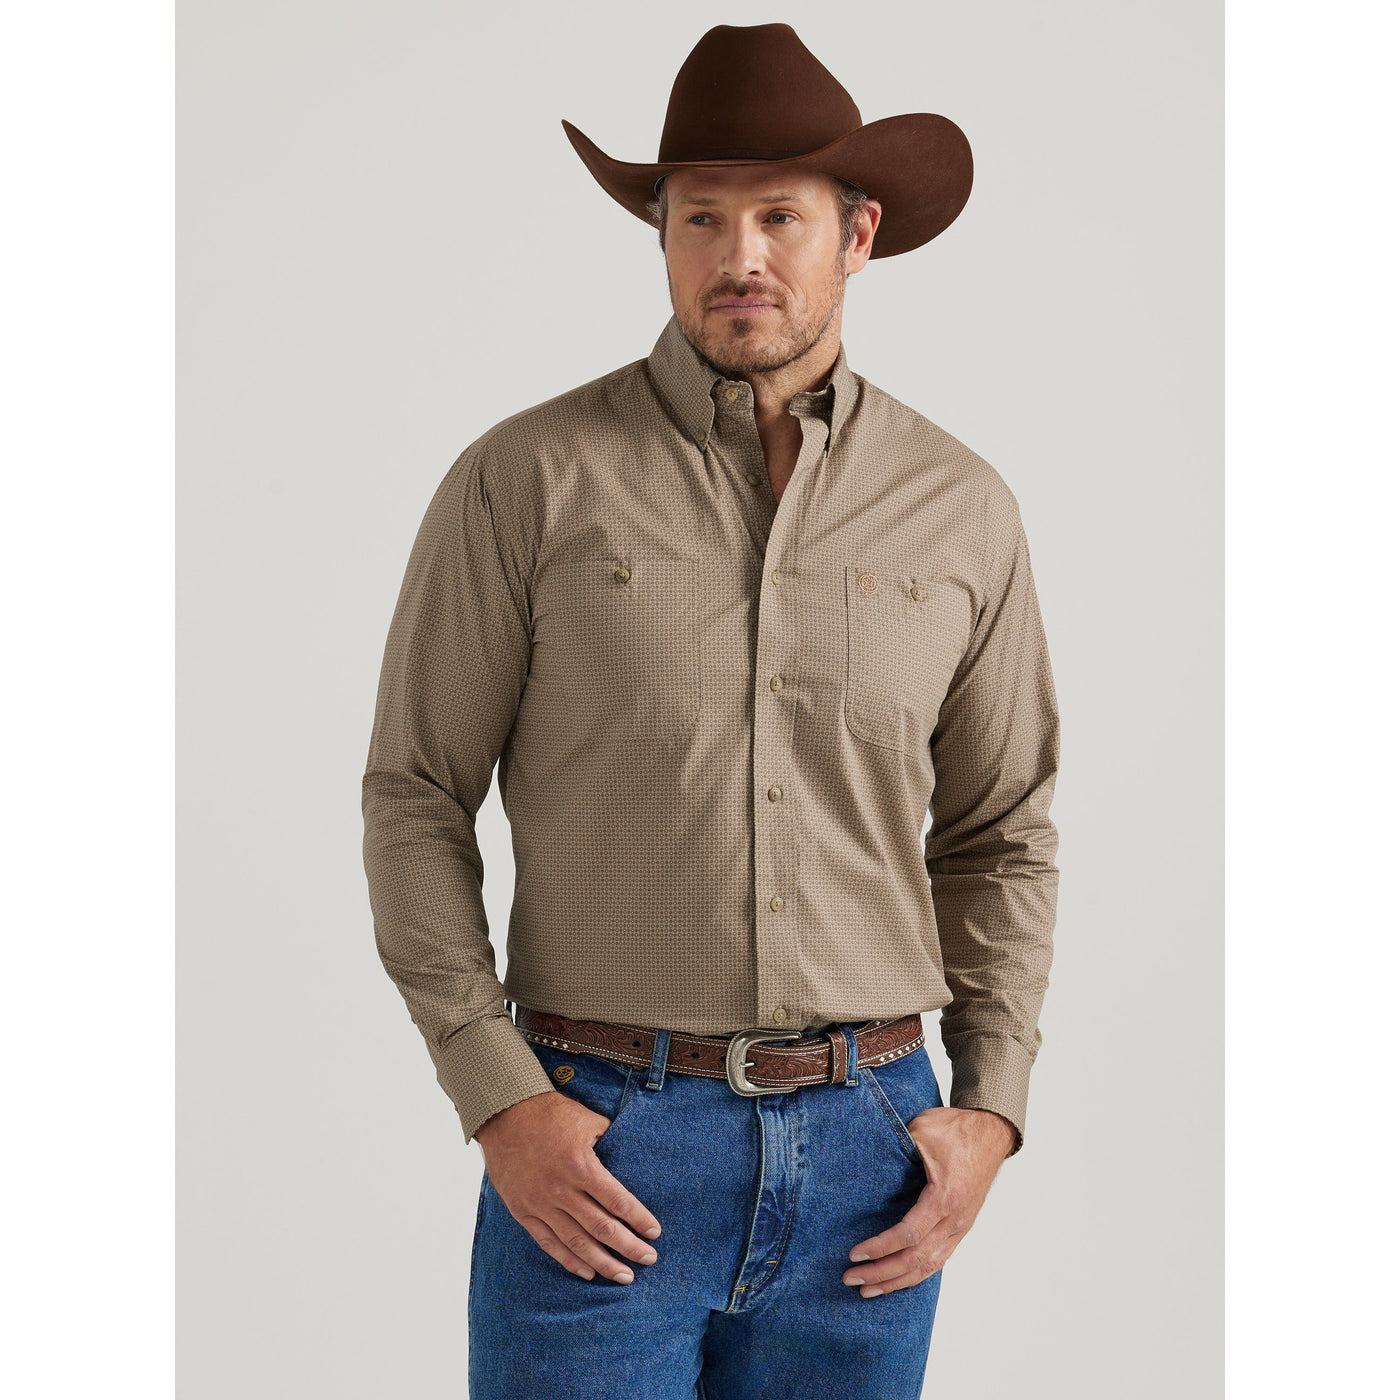 Wrangler Men's George Strait Two Pocket Long Sleeve Shirt